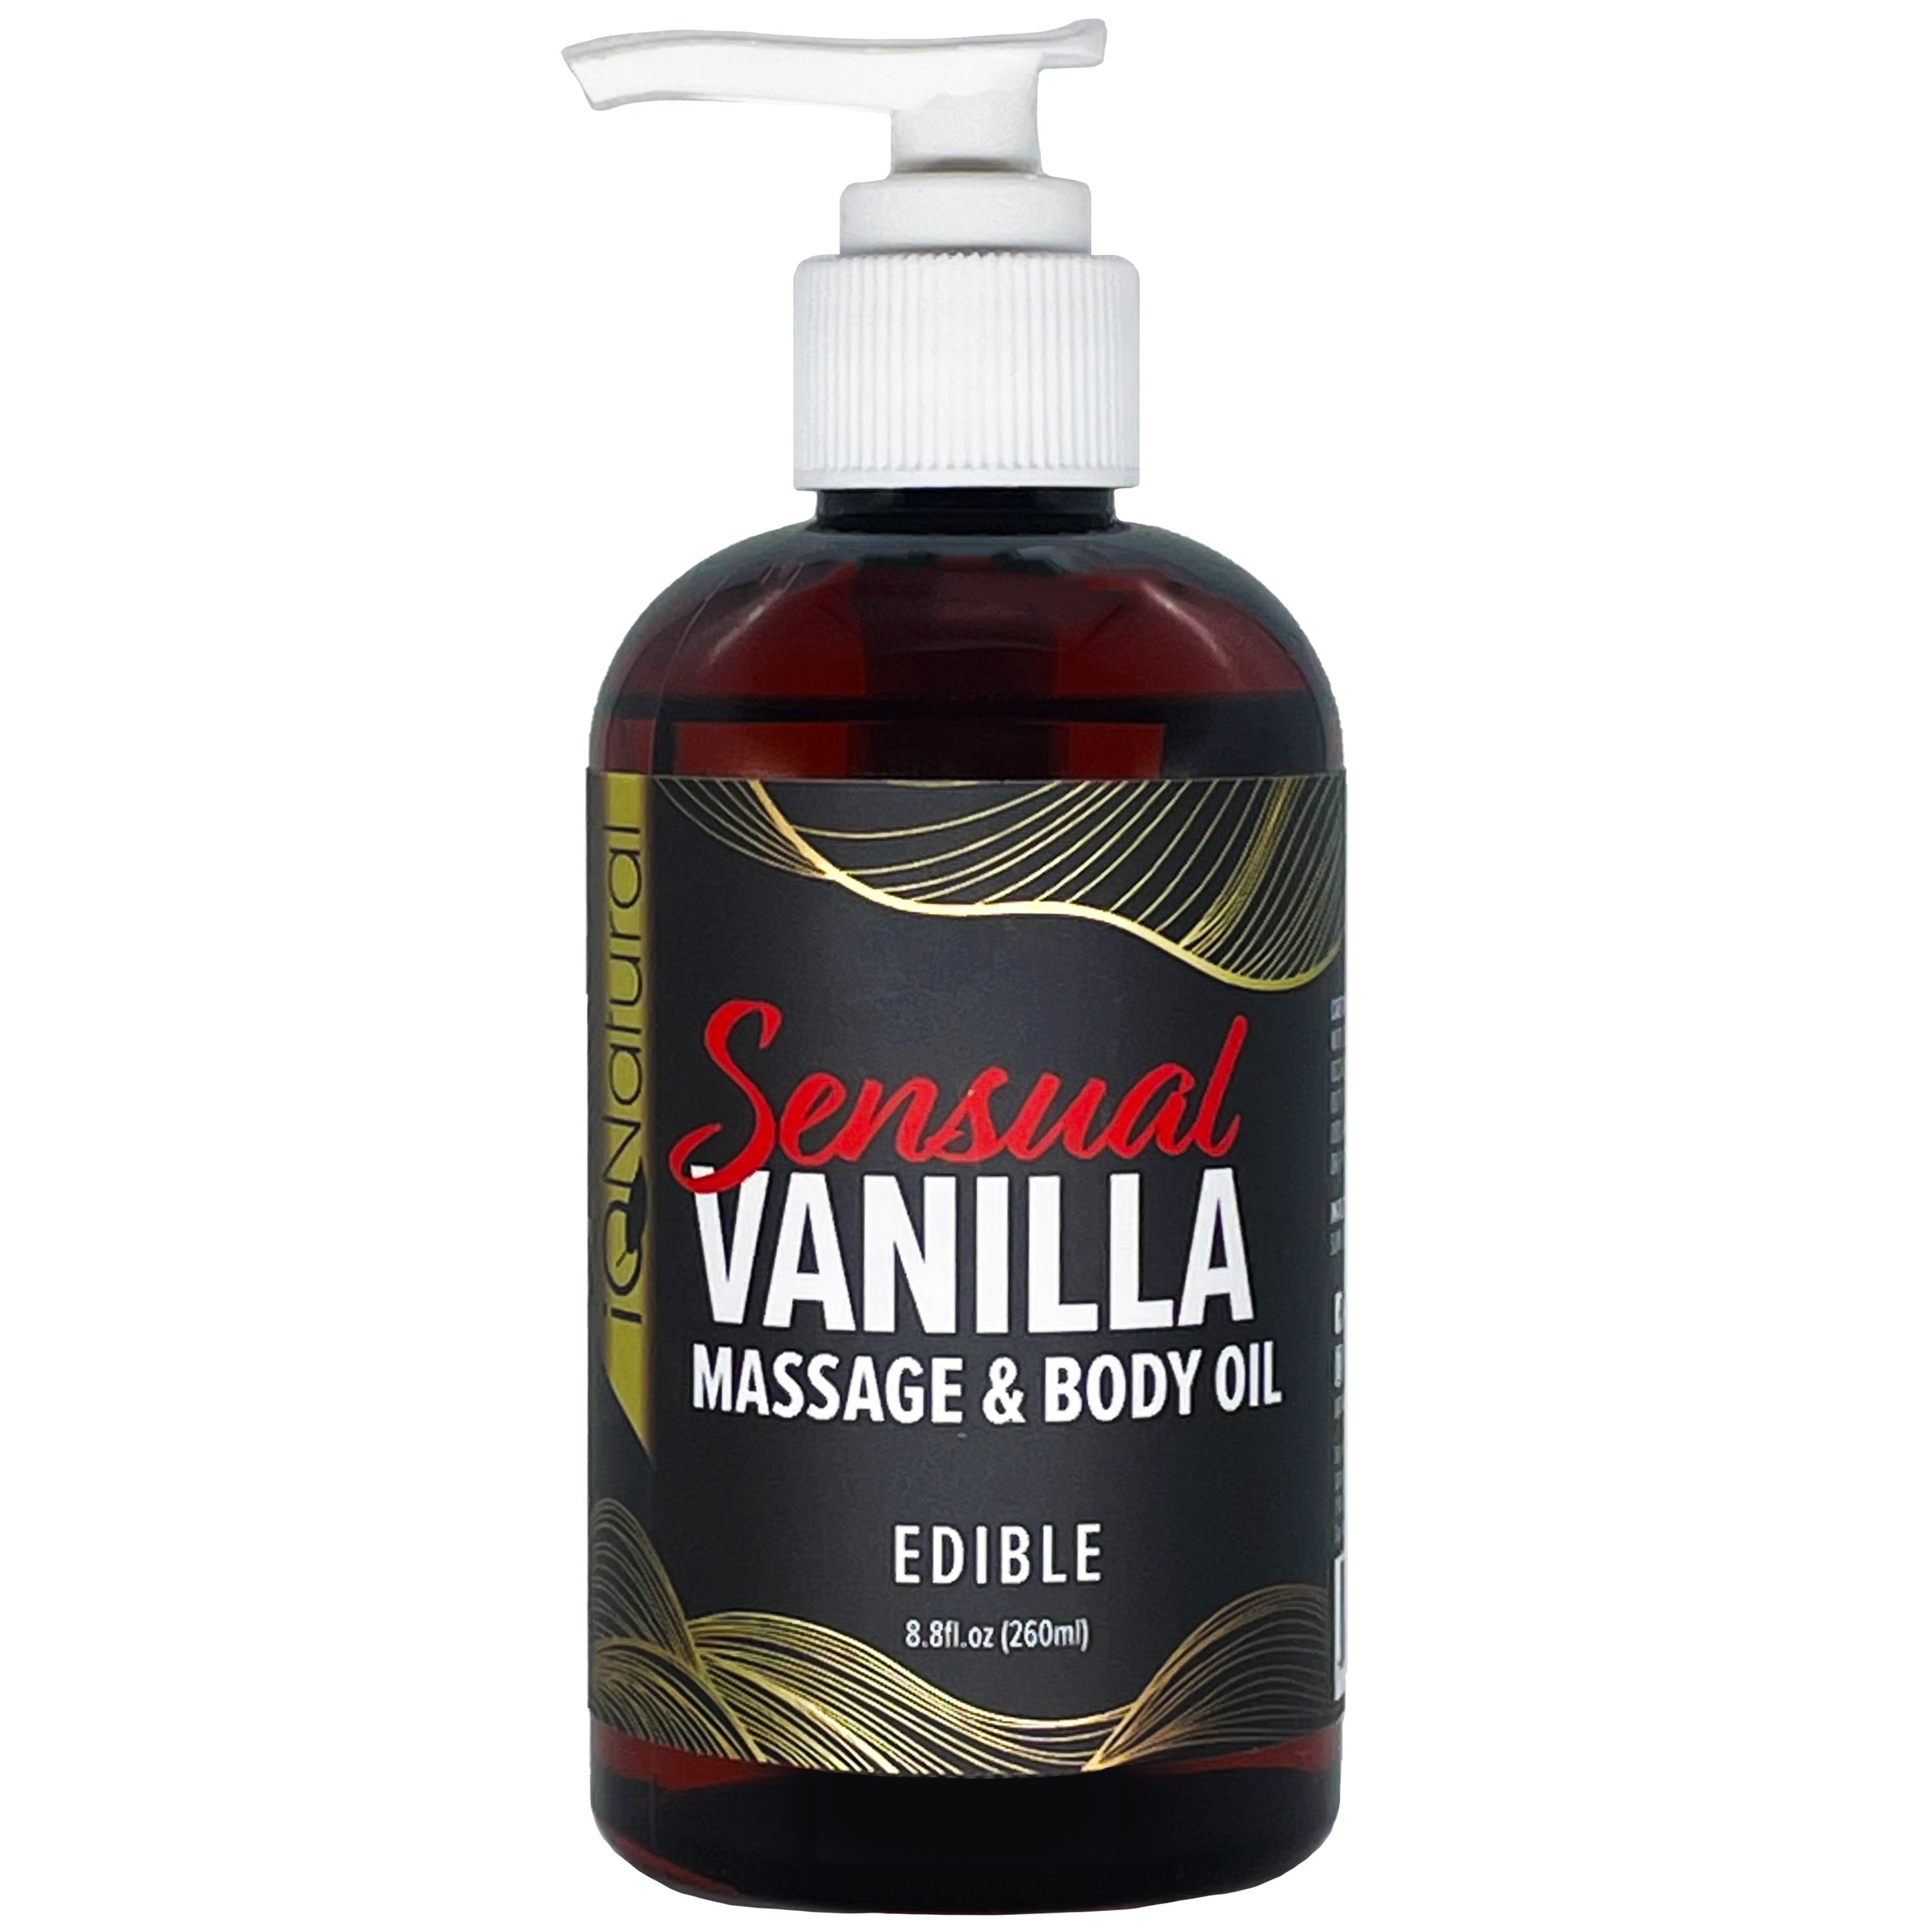 iQ Natural Massage Oil and Body Oil Sensual Vanilla Edible for Intimate Massage Therapy 8.8 fl oz photo picture